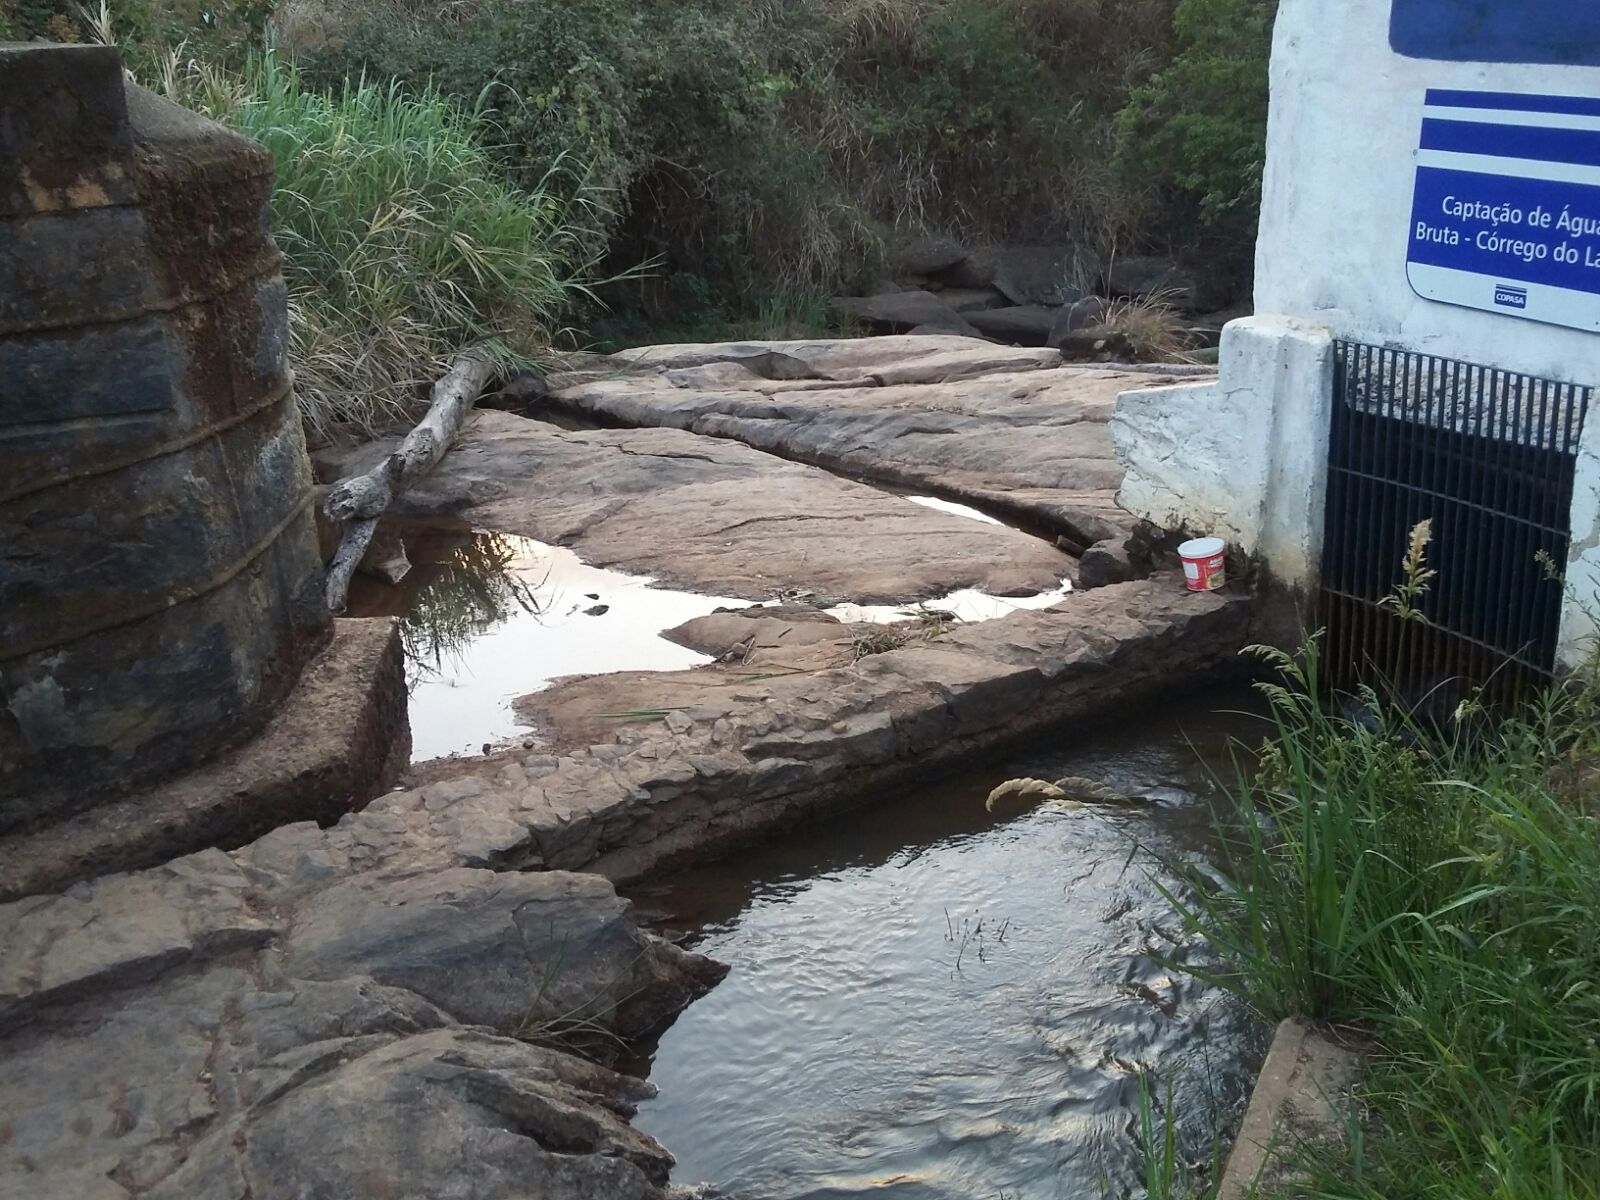 Crise hídrica: Prefeitura de Caratinga deve decretar estado de emergência amanhã